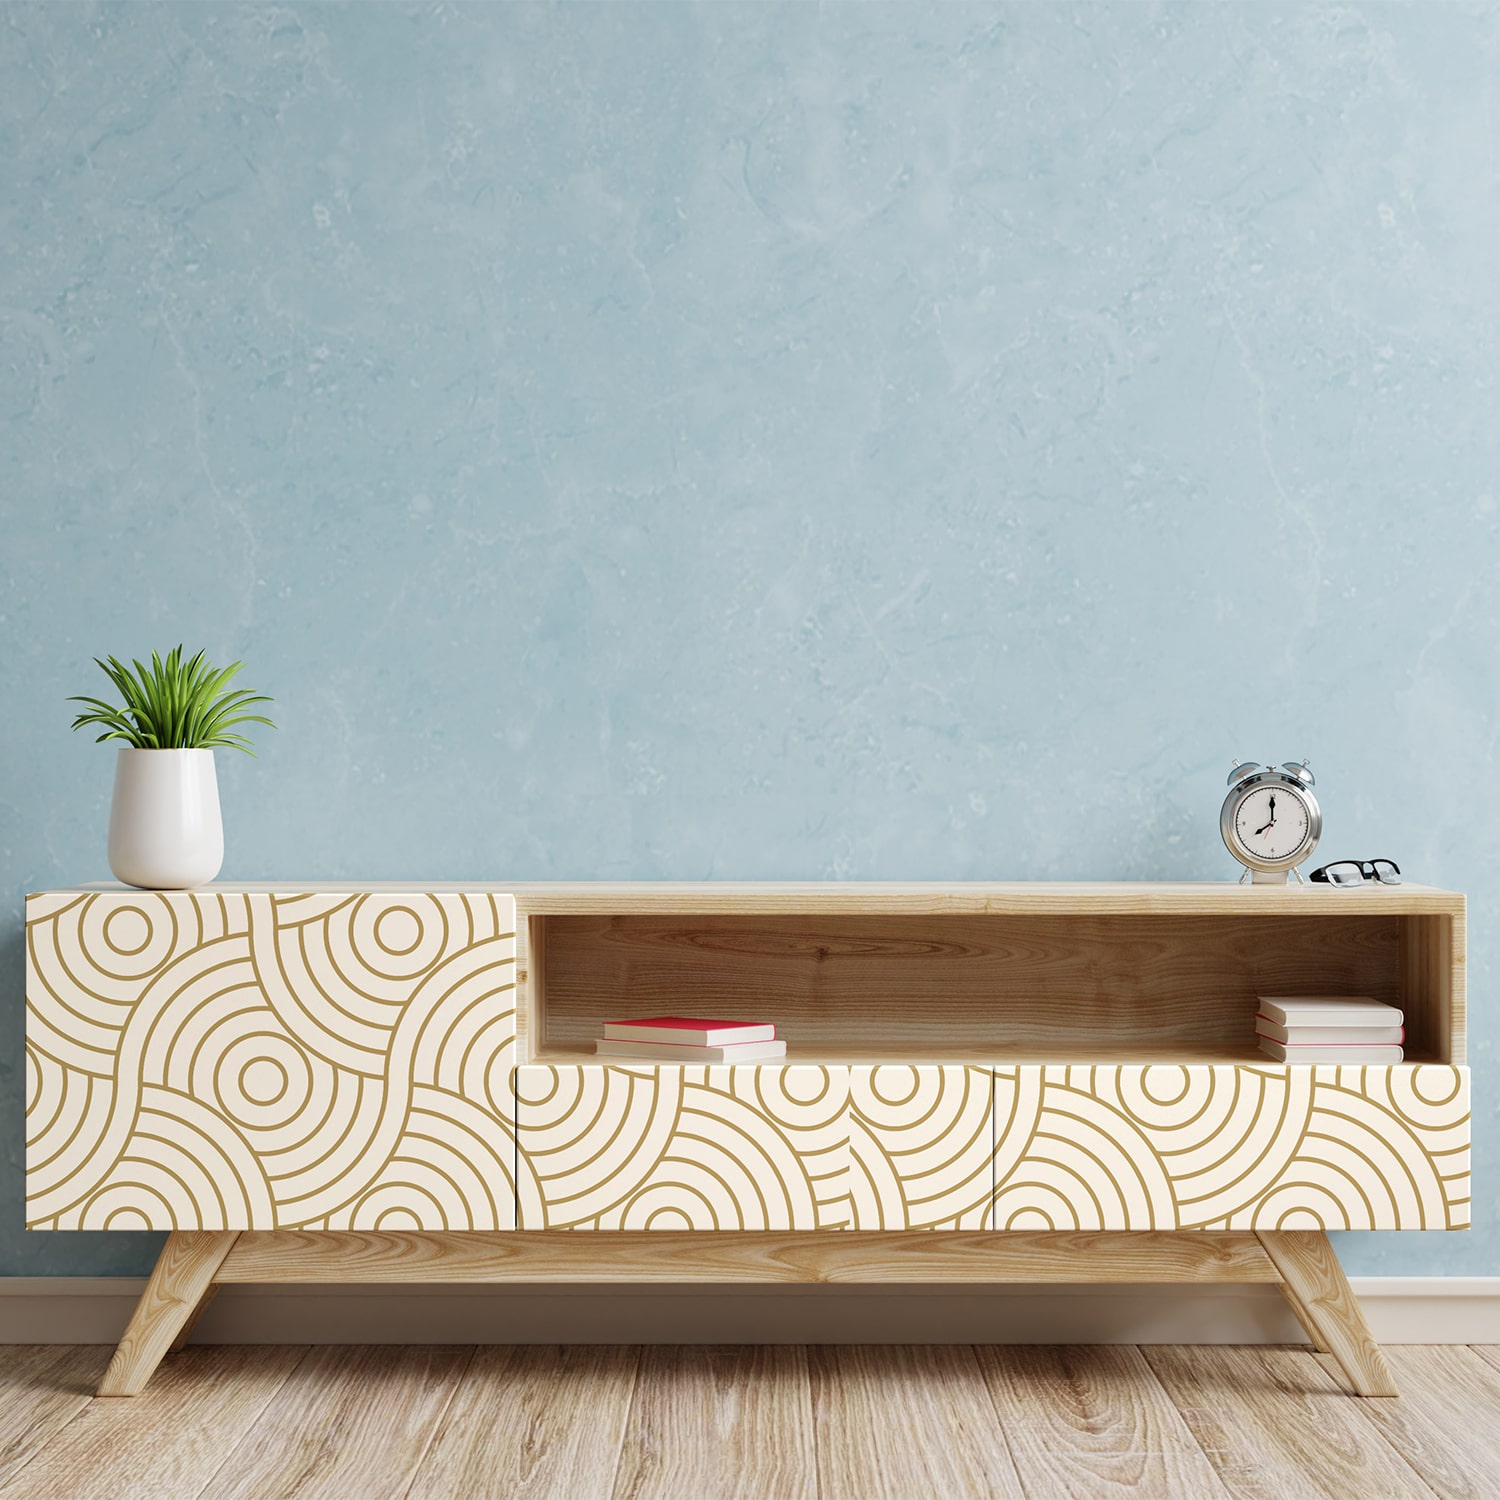 PP41-meuble-papier-peint-adhesif-decoratif-revetement-vinyle-rond-géométriques-croisés-renovation-meuble-mur-min